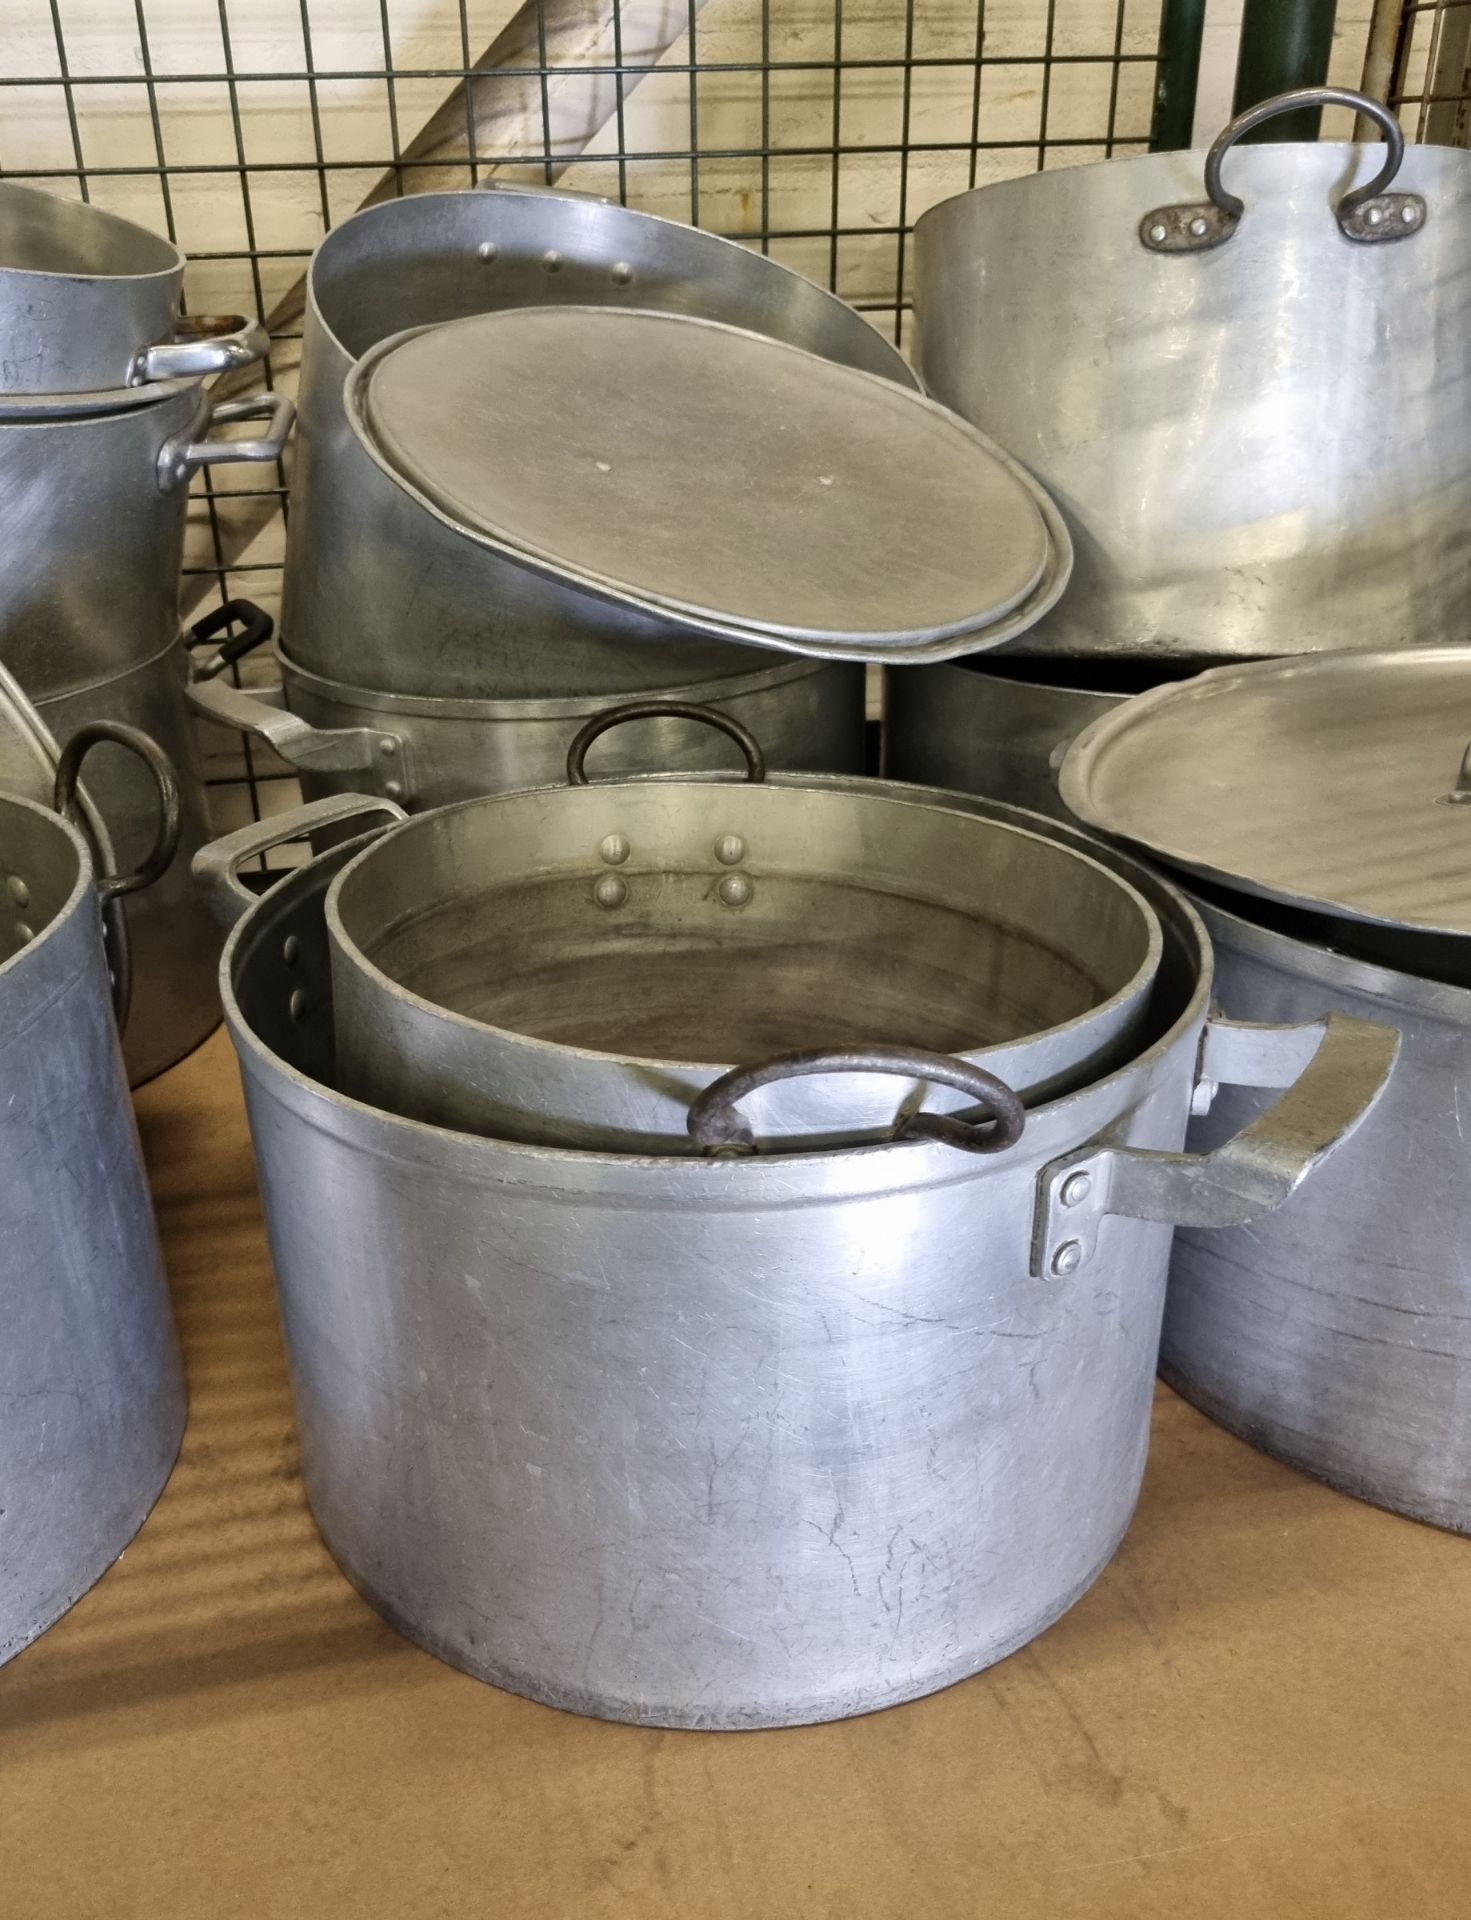 Catering equipment - saucepans - medium and large sizes - Bild 3 aus 4